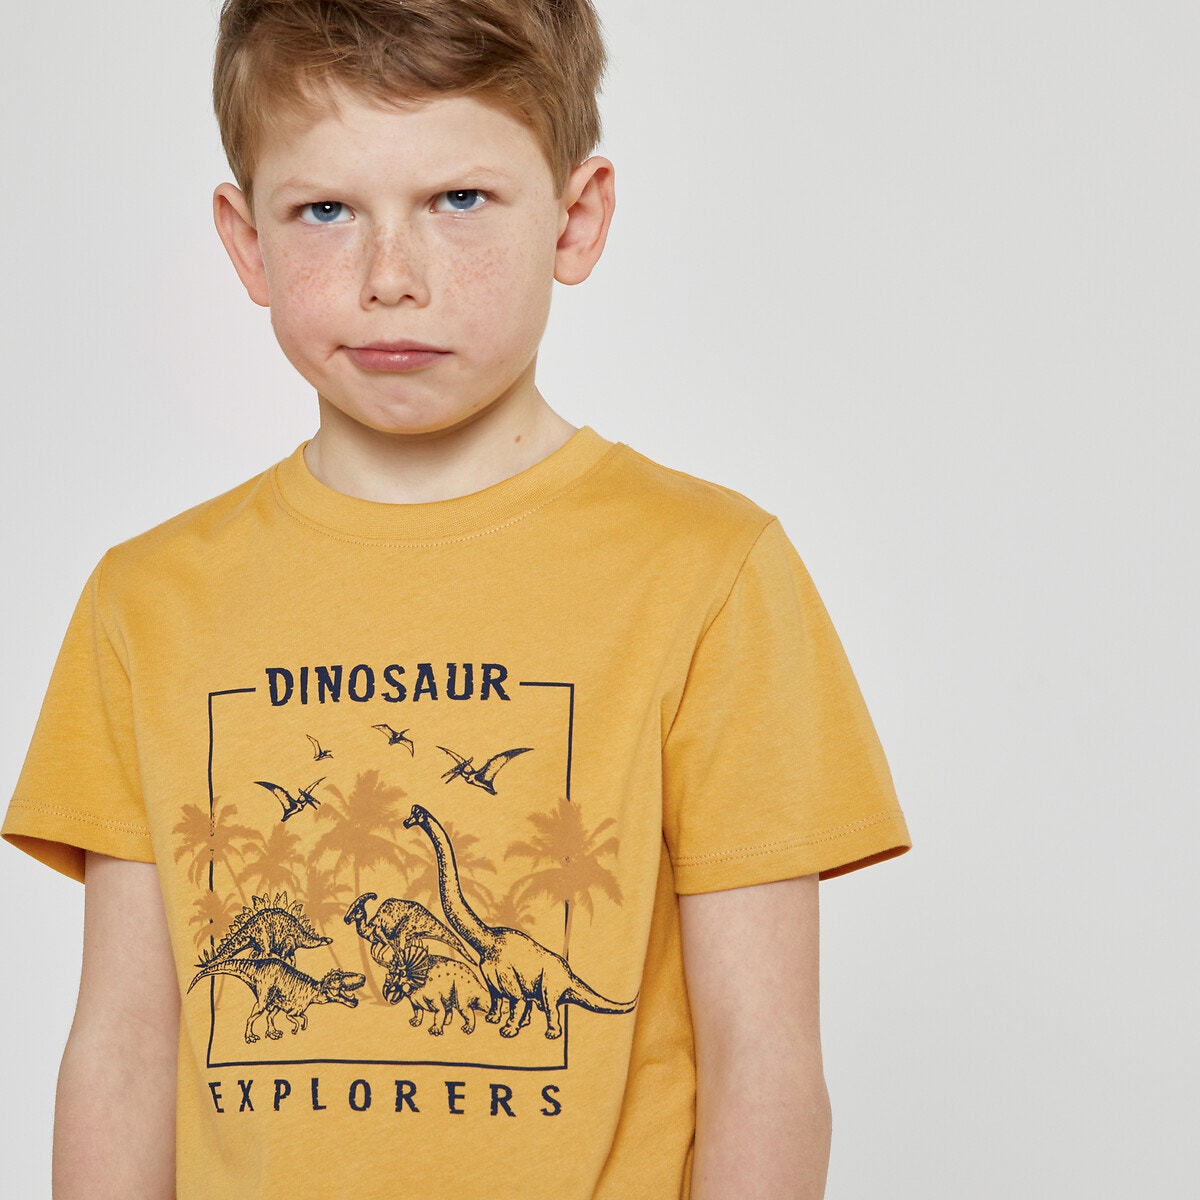 Μόδα > Παιδικά > Αγόρι > T-shirt, πόλο > Κοντά μανίκια Κοντομάνικο T-shirt με μοτίβο δεινόσαυρους